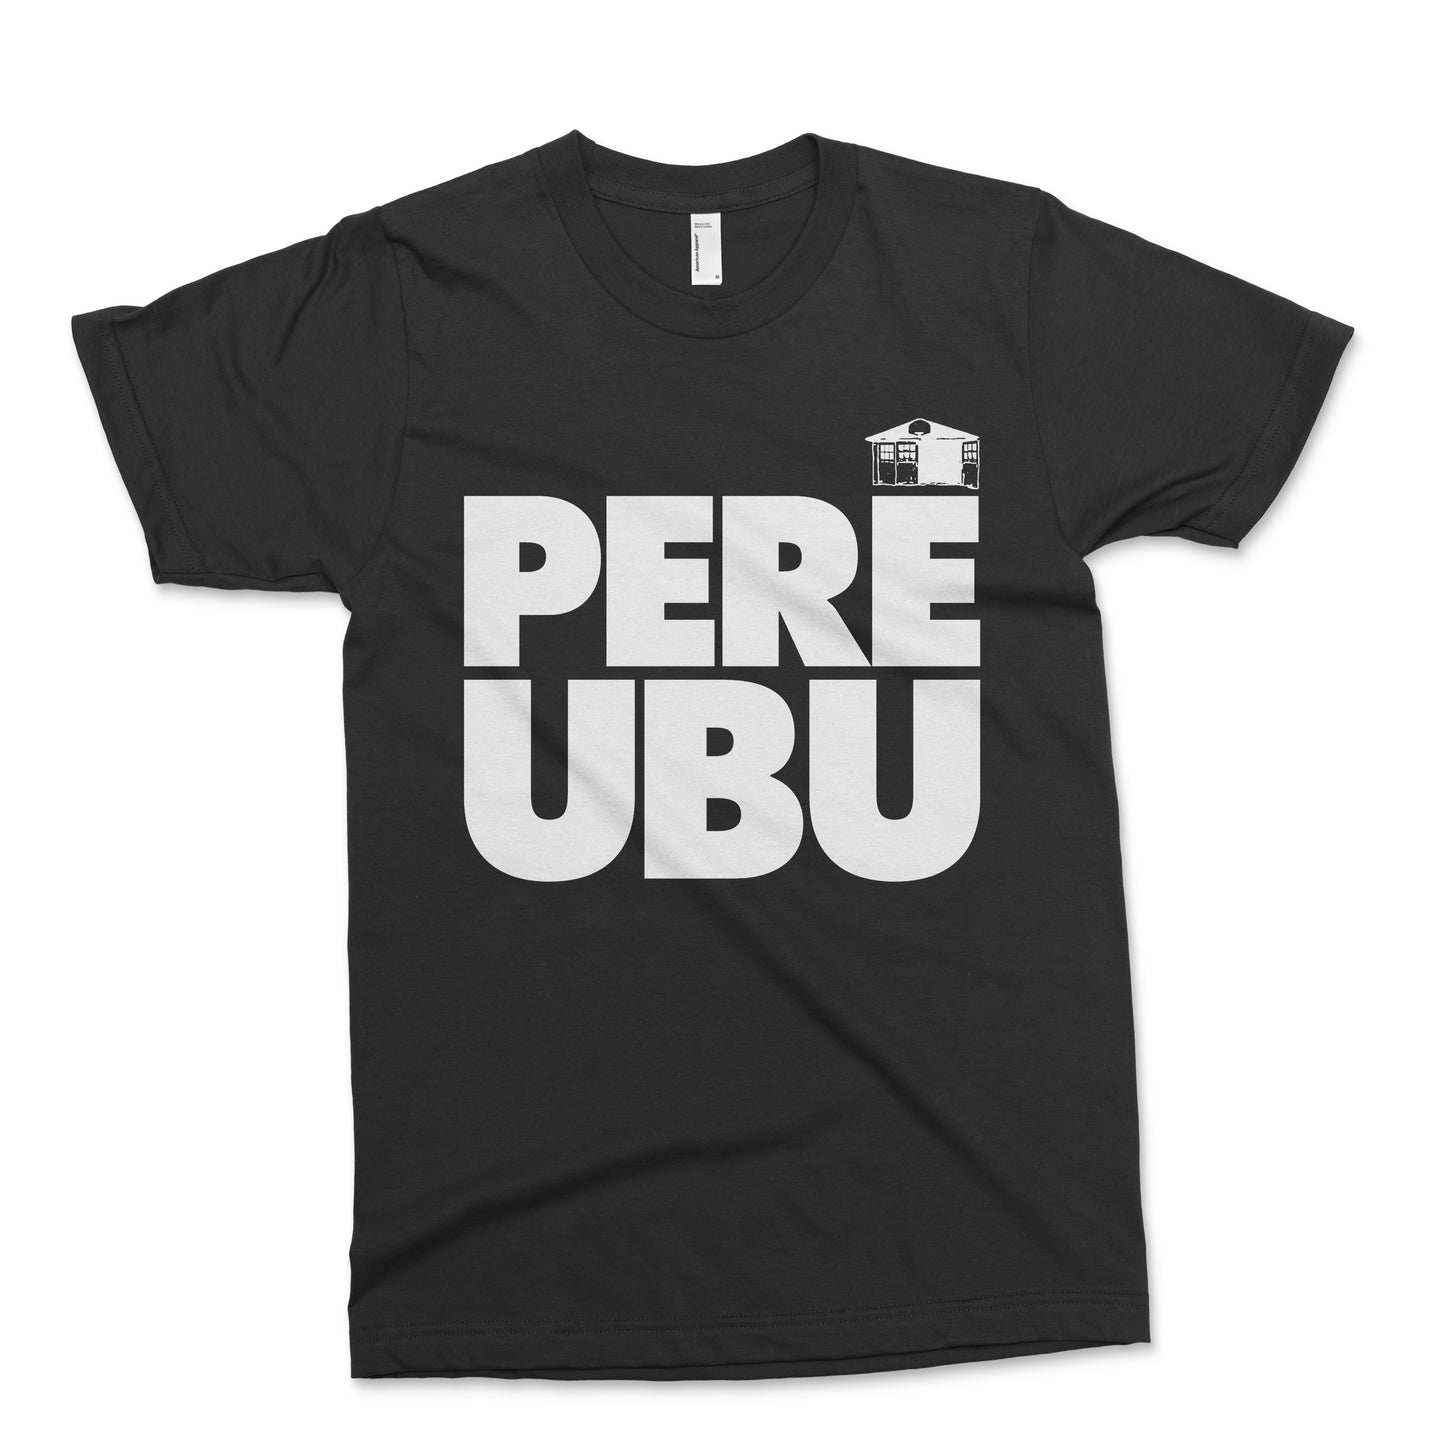 Pere Ubu - Classic T in Black